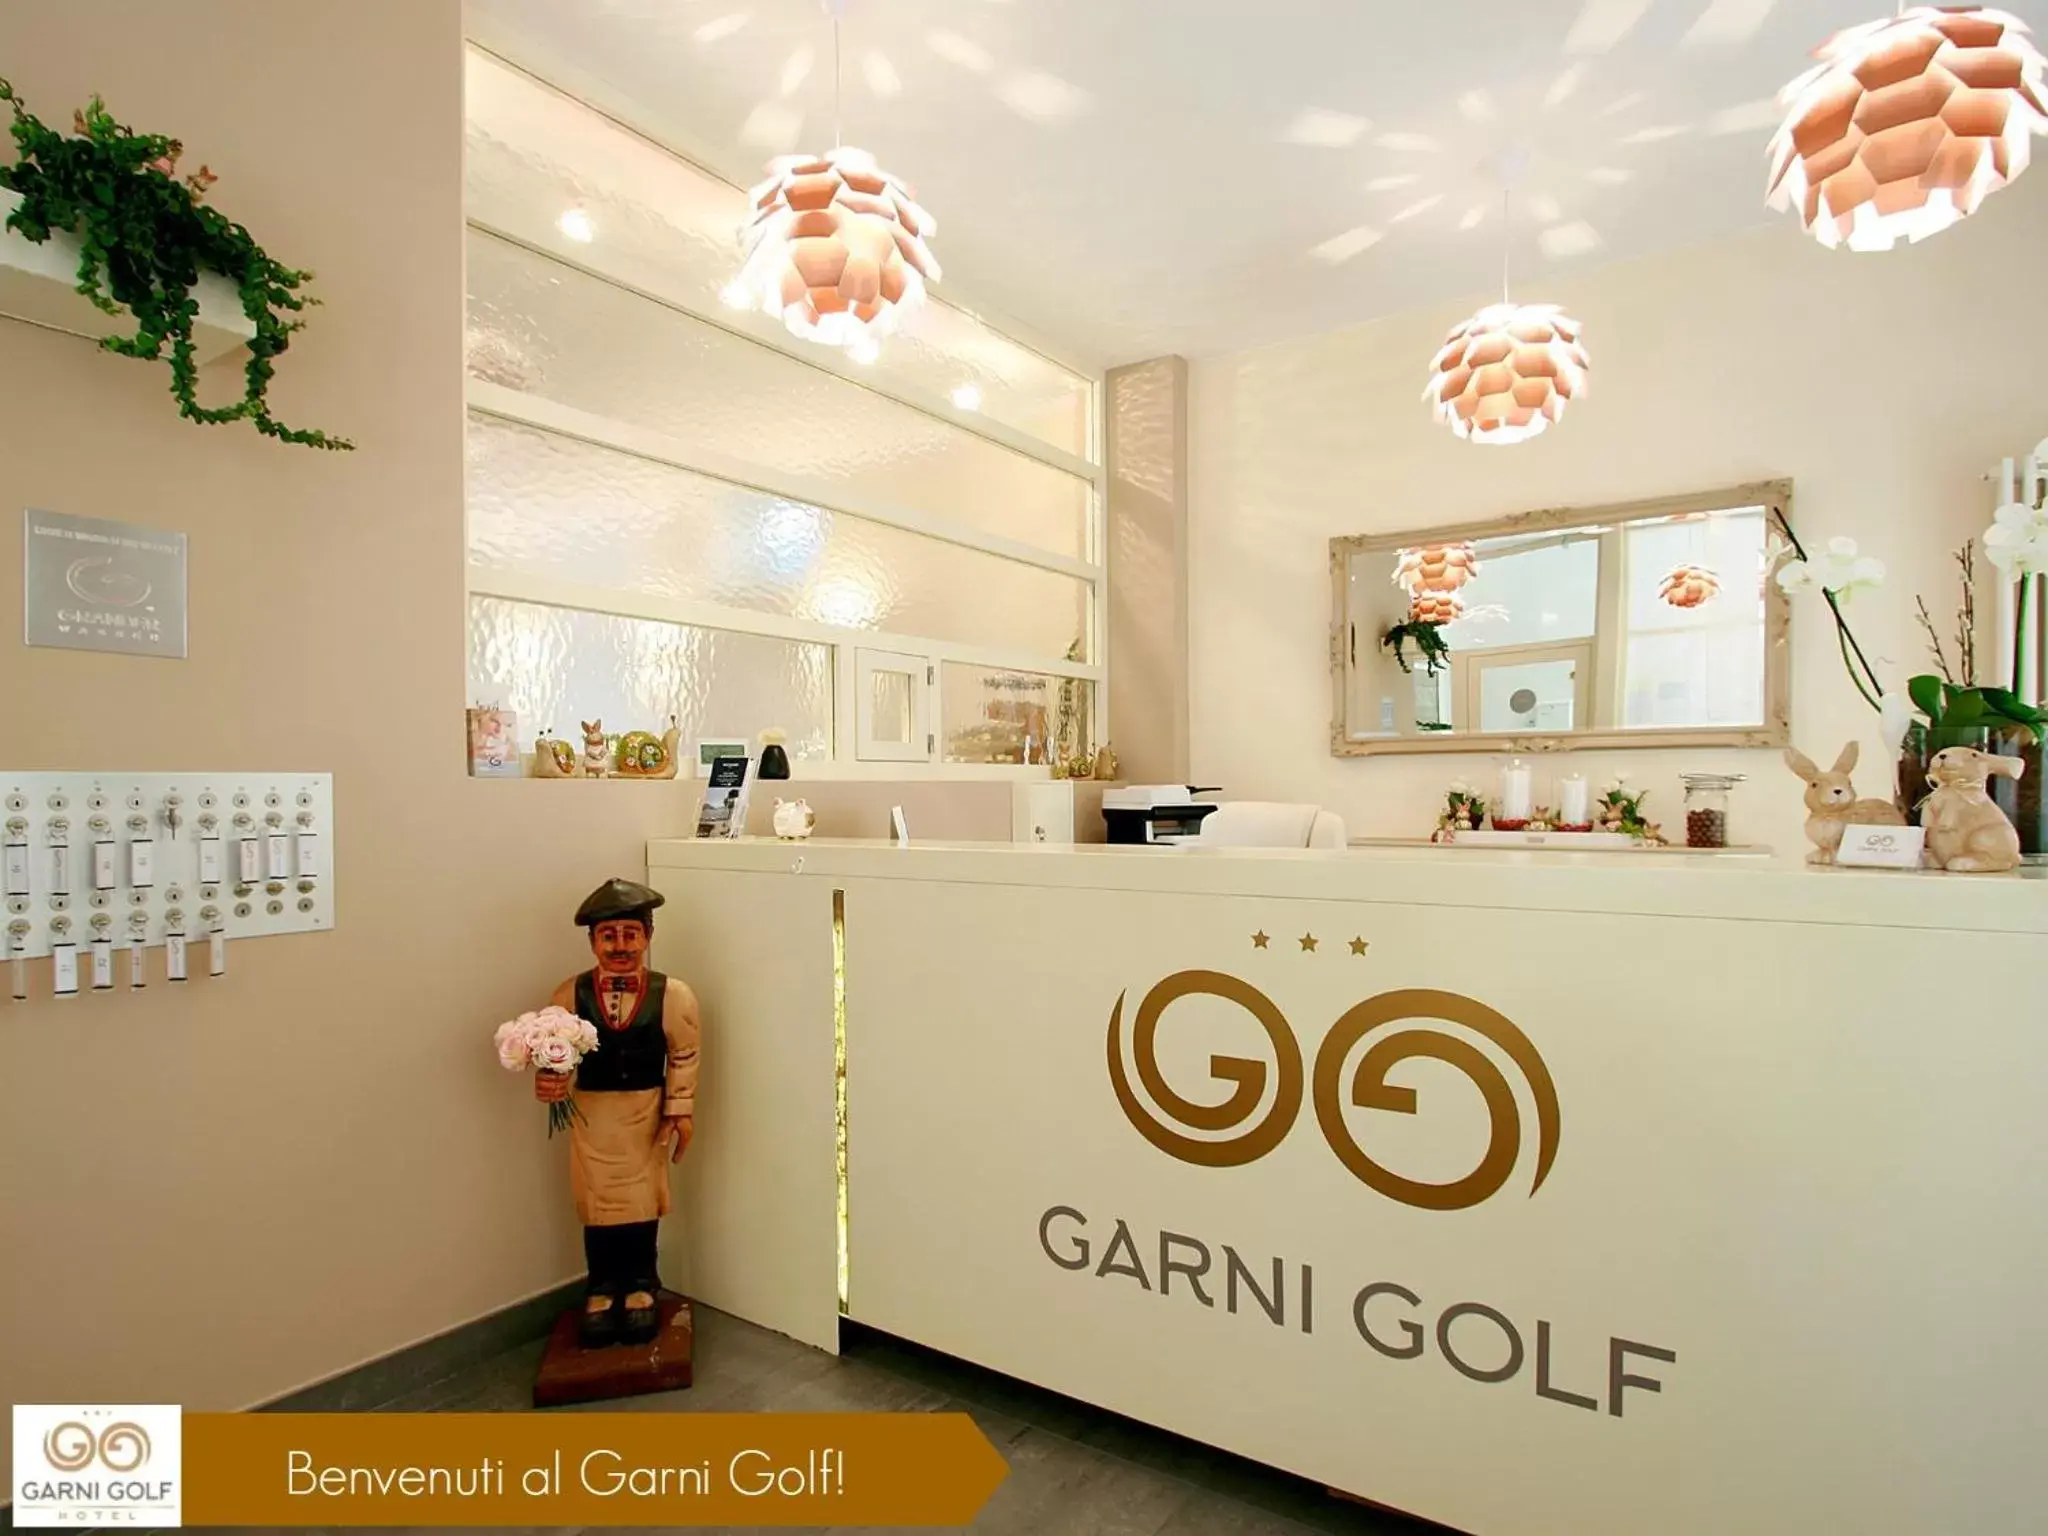 Lobby or reception, Lobby/Reception in Hotel Garni Golf